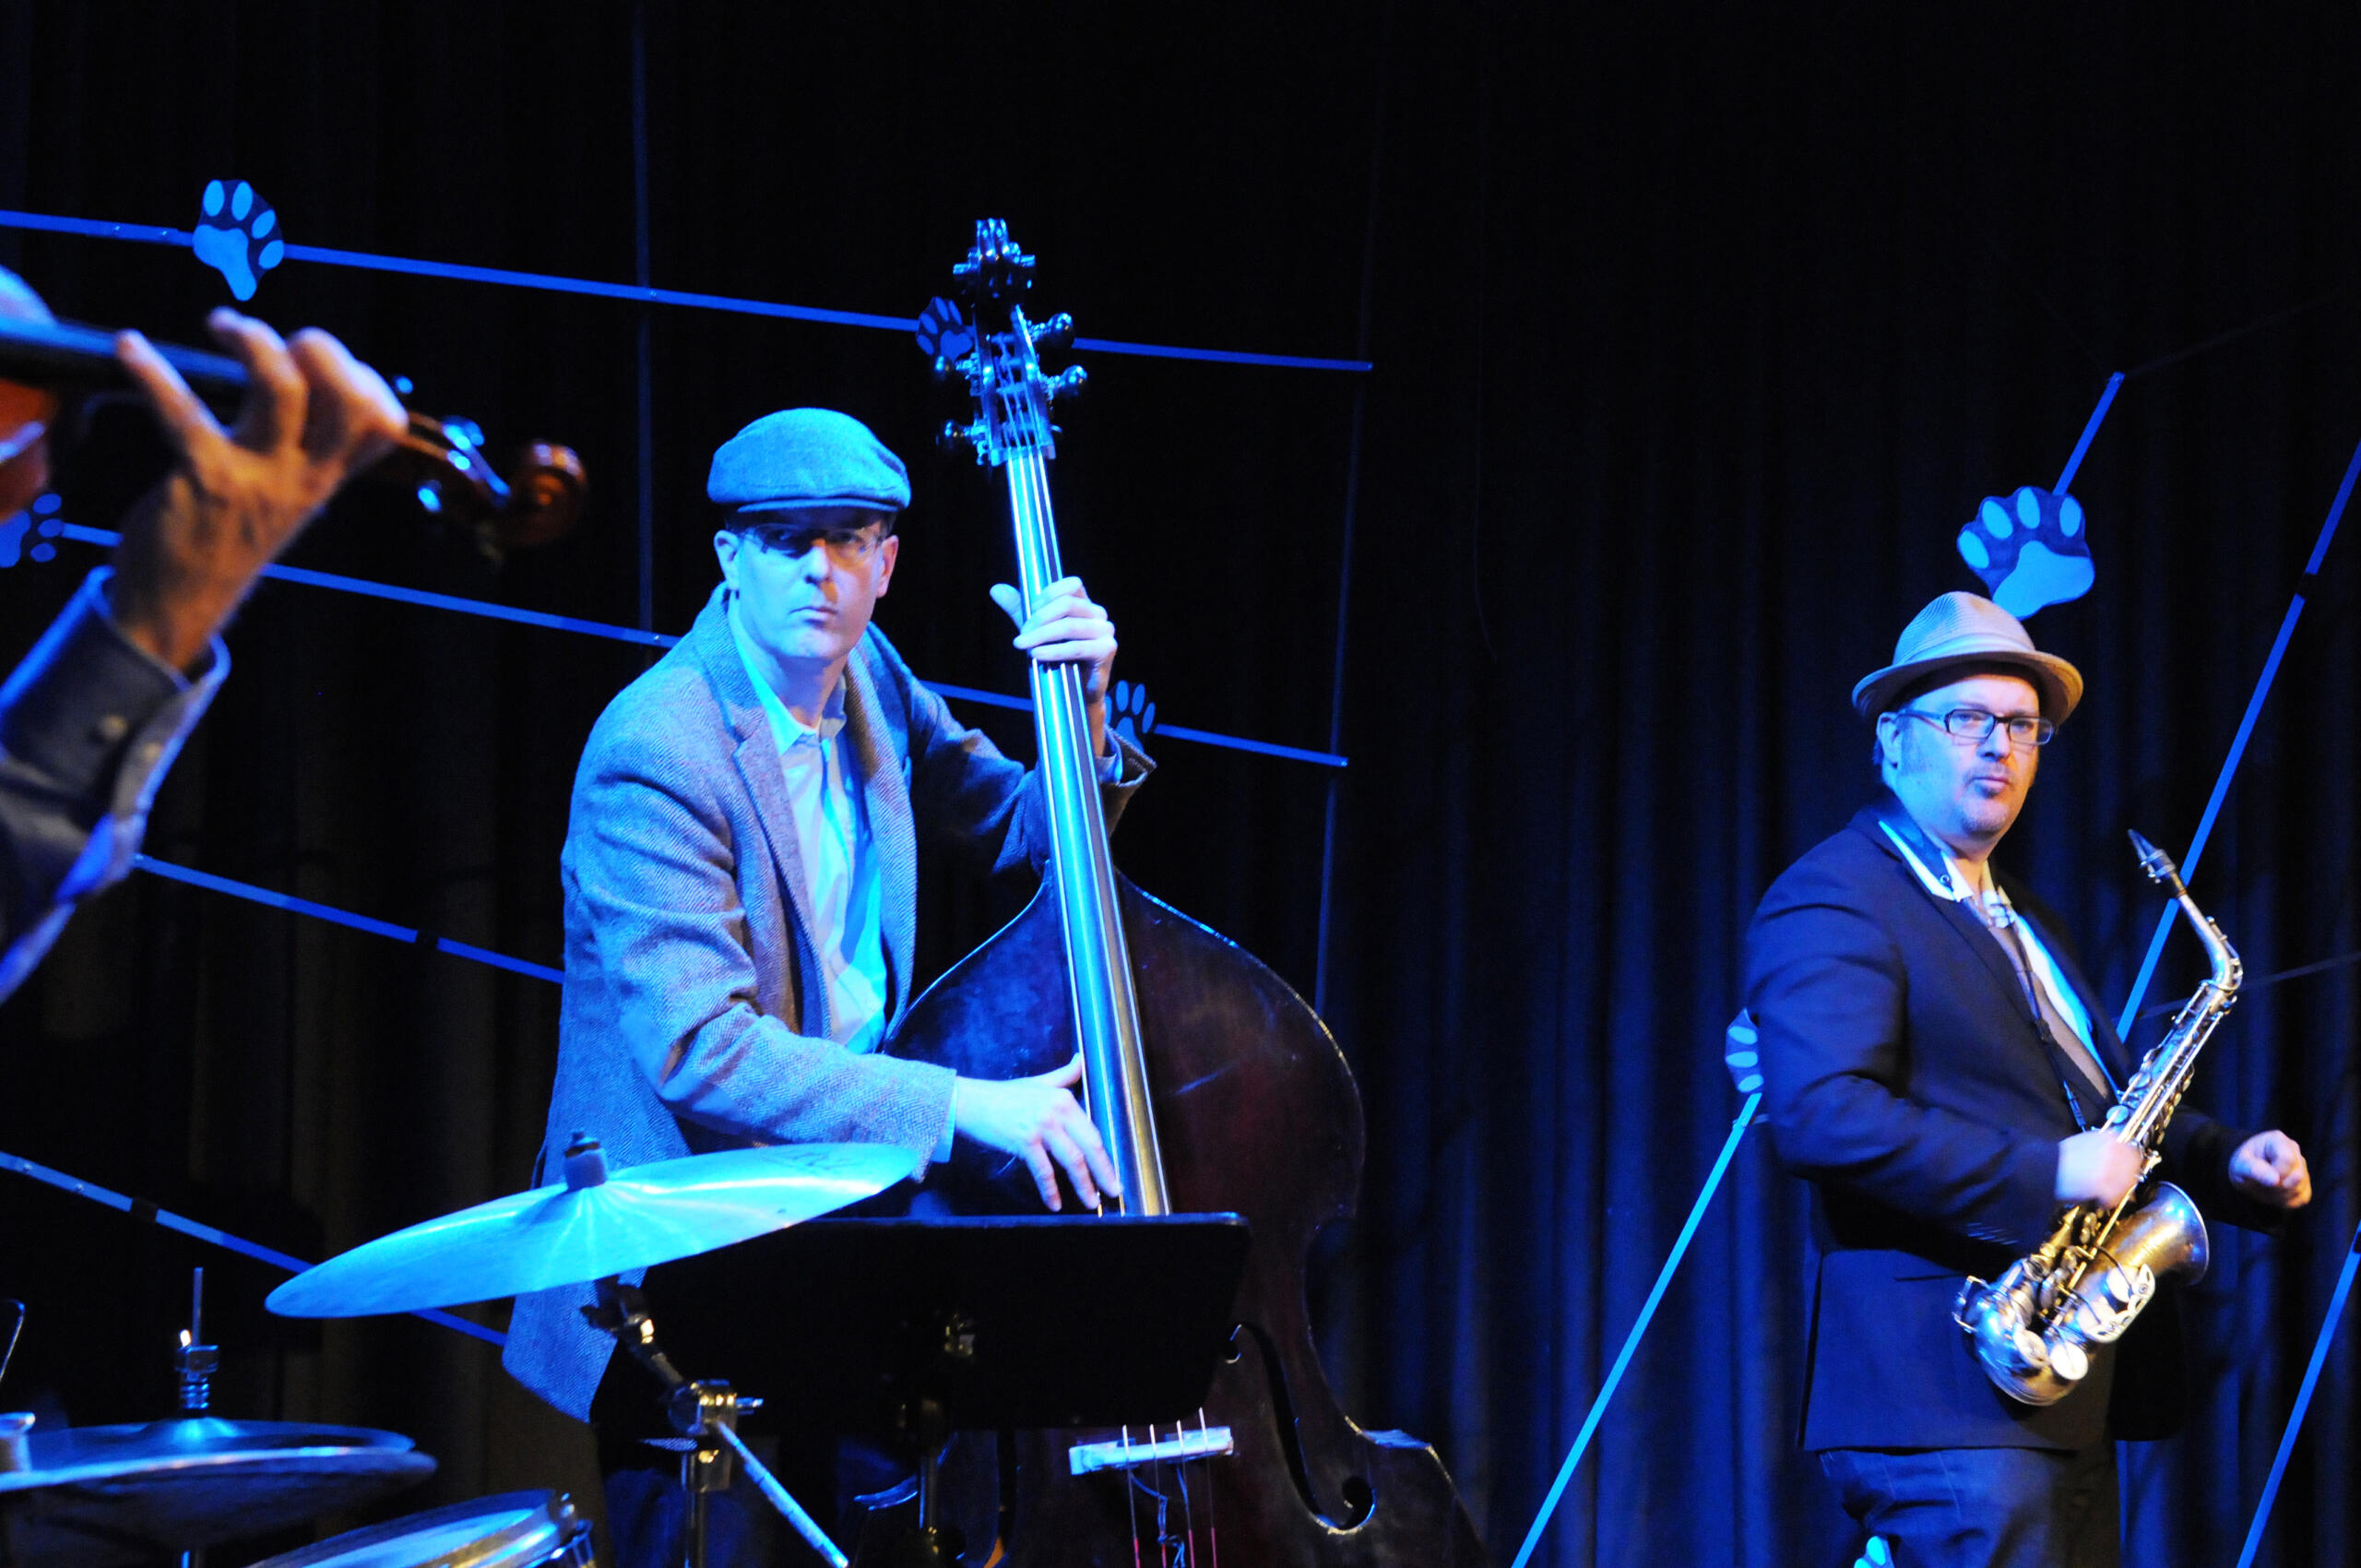 Ein Musiker mit einem Kontrabass und ein Musiker mit einem Saxophon stehen auf einer Bühne, die blau erleuchtet ist.